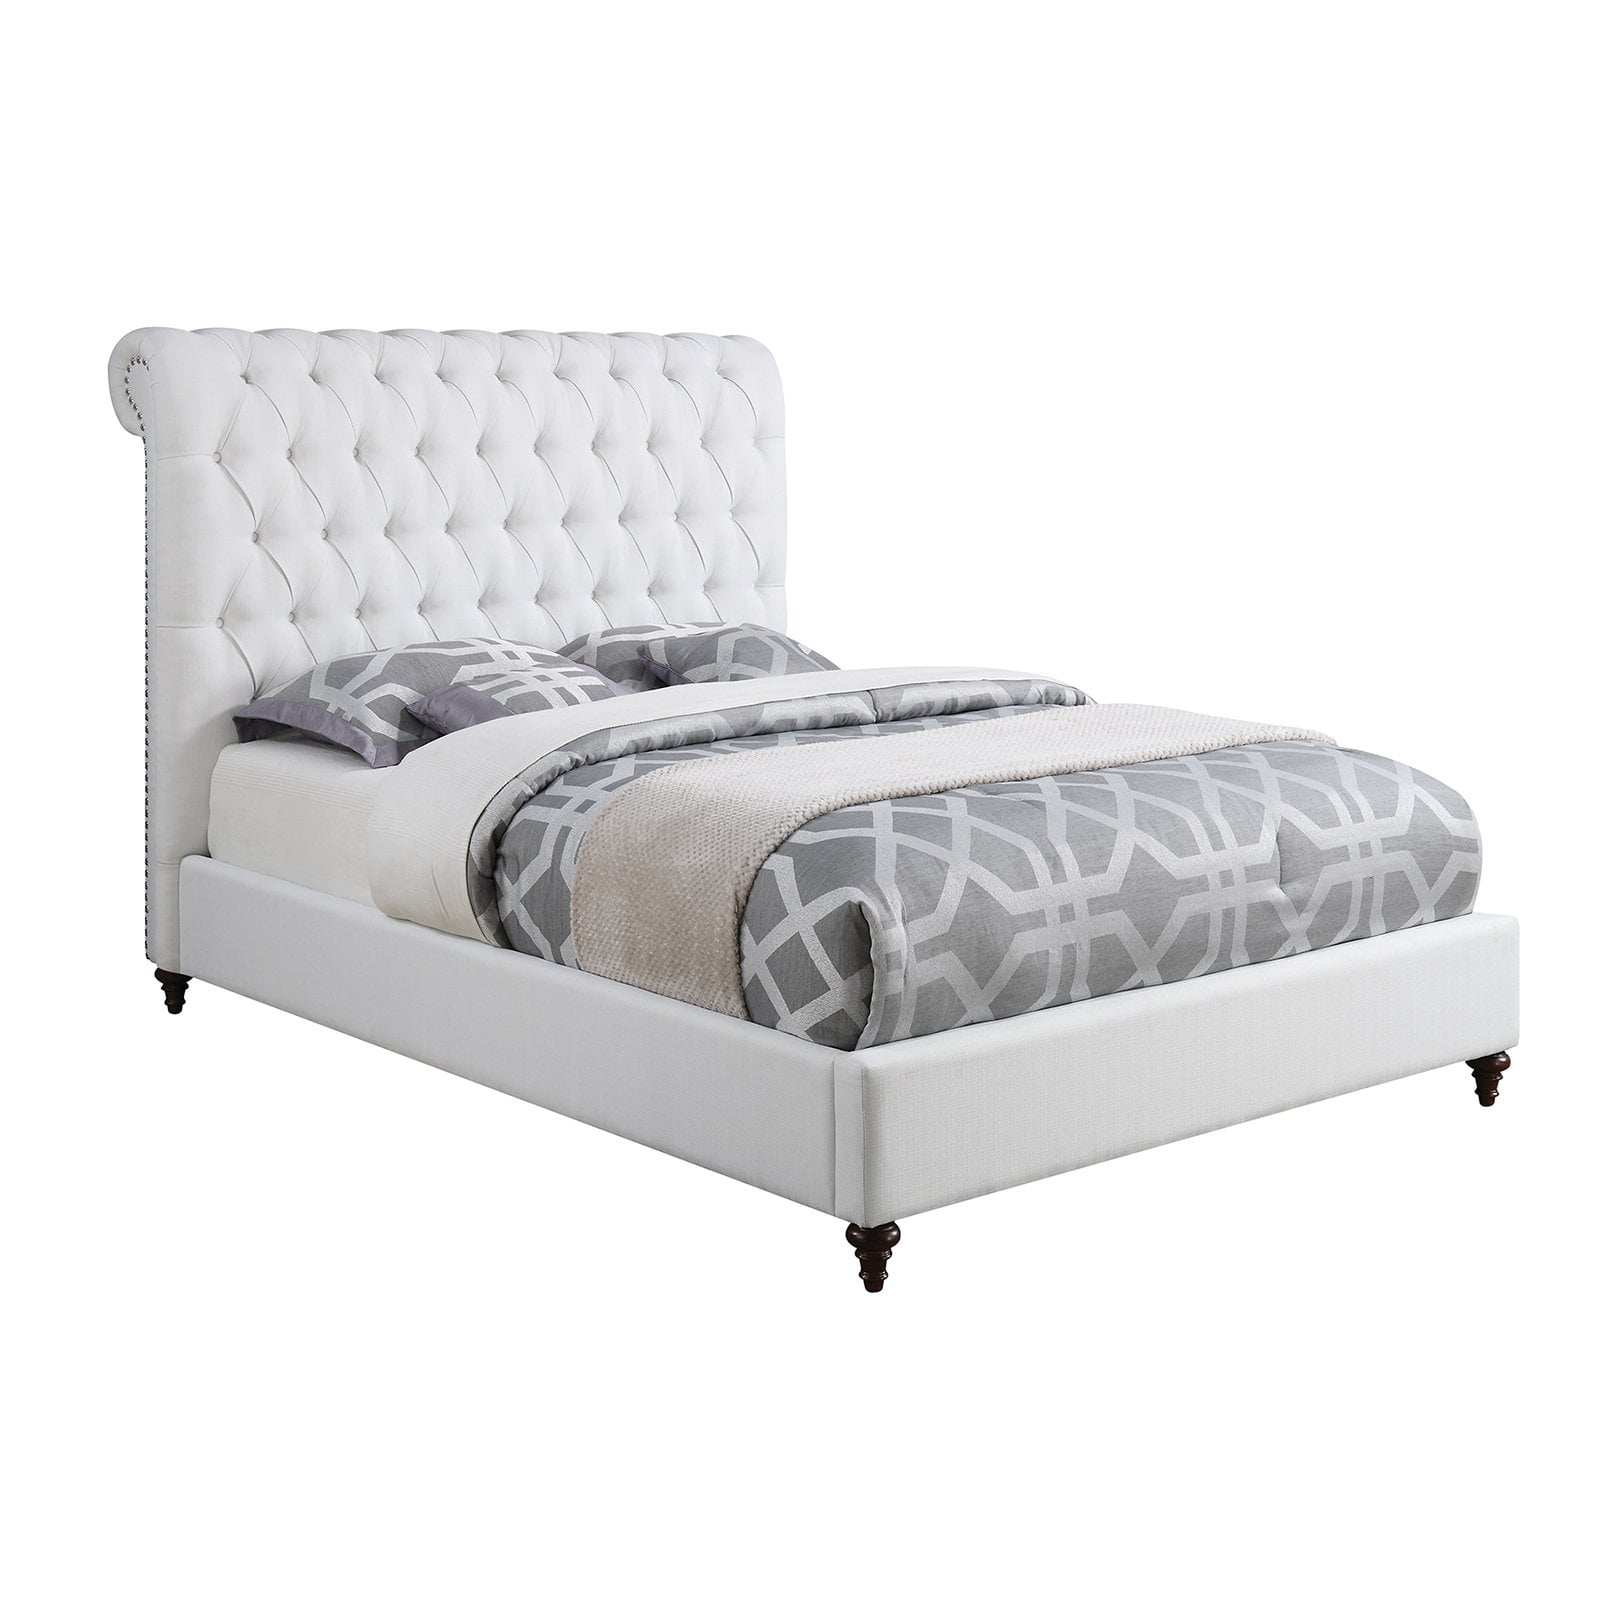 Coaster Furniture Devon Upholstered Bed